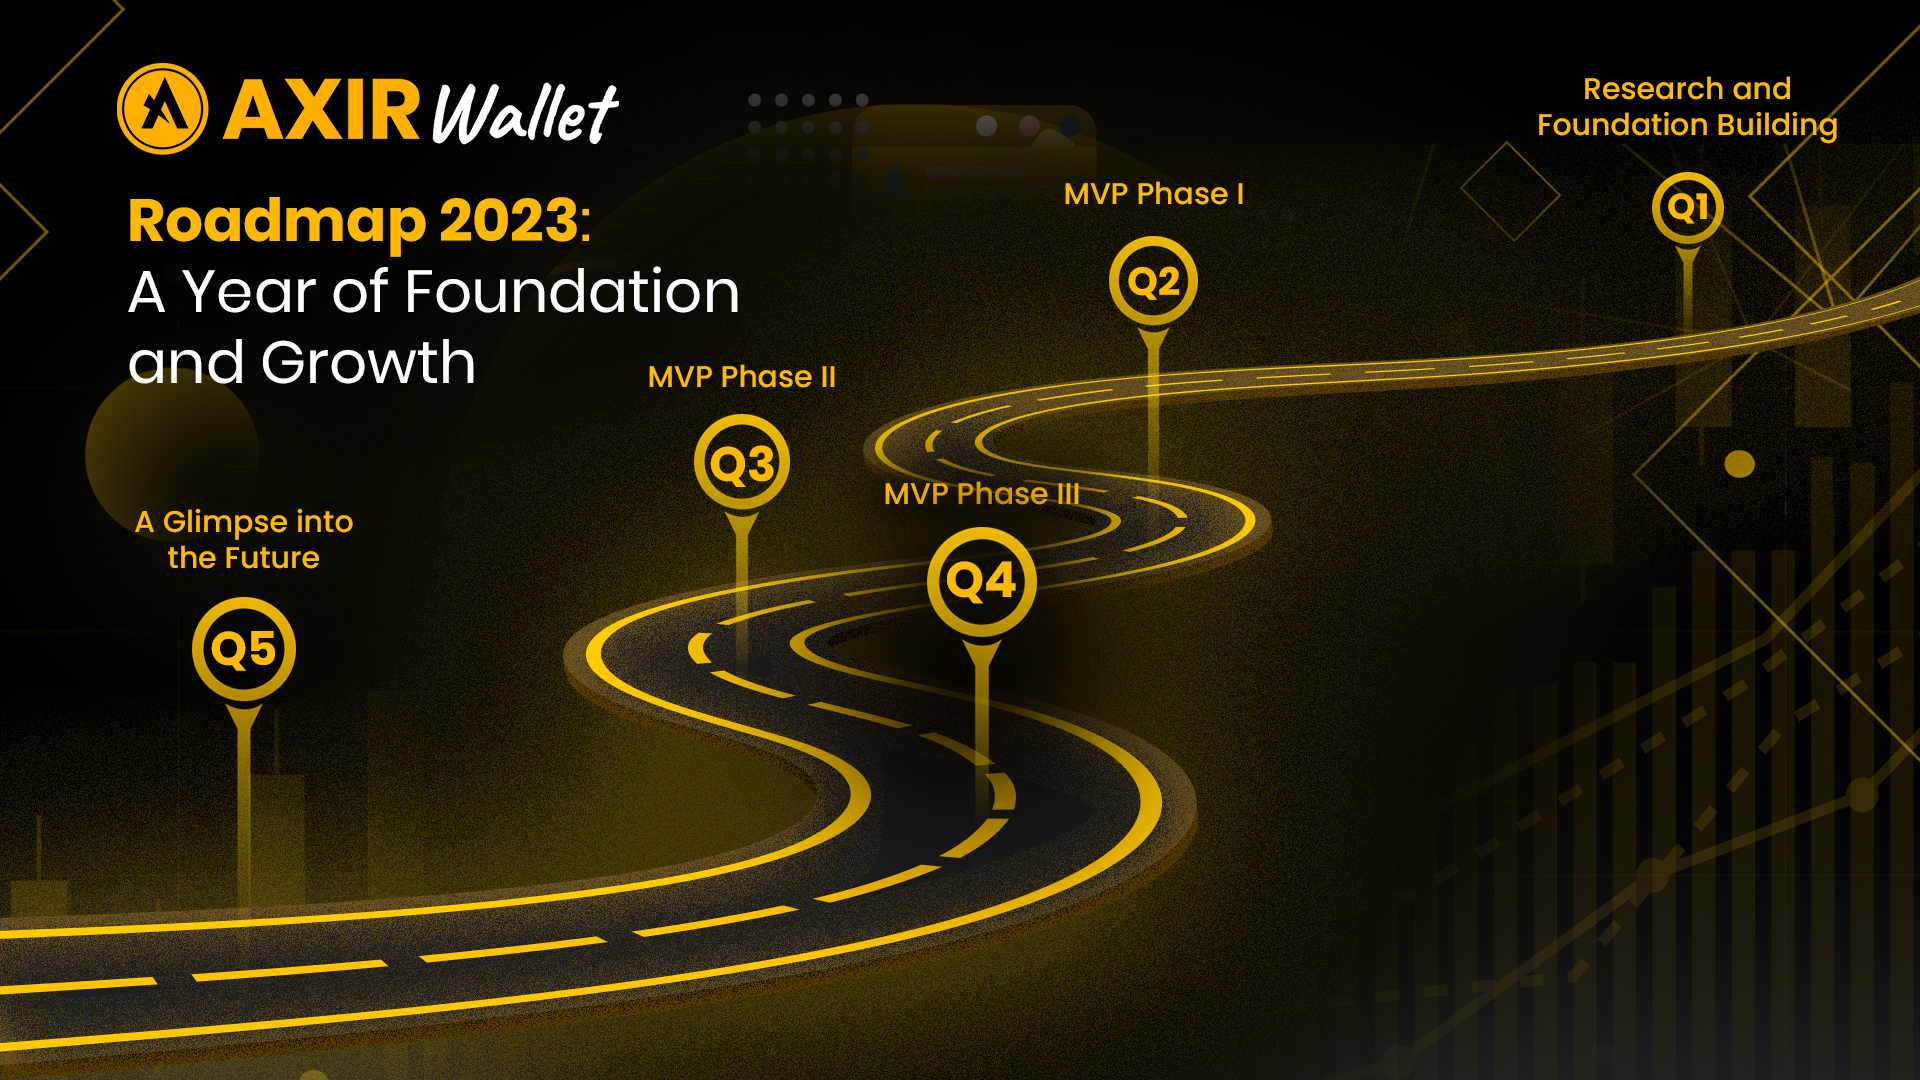 Axir Wallet's 2023 roadmap